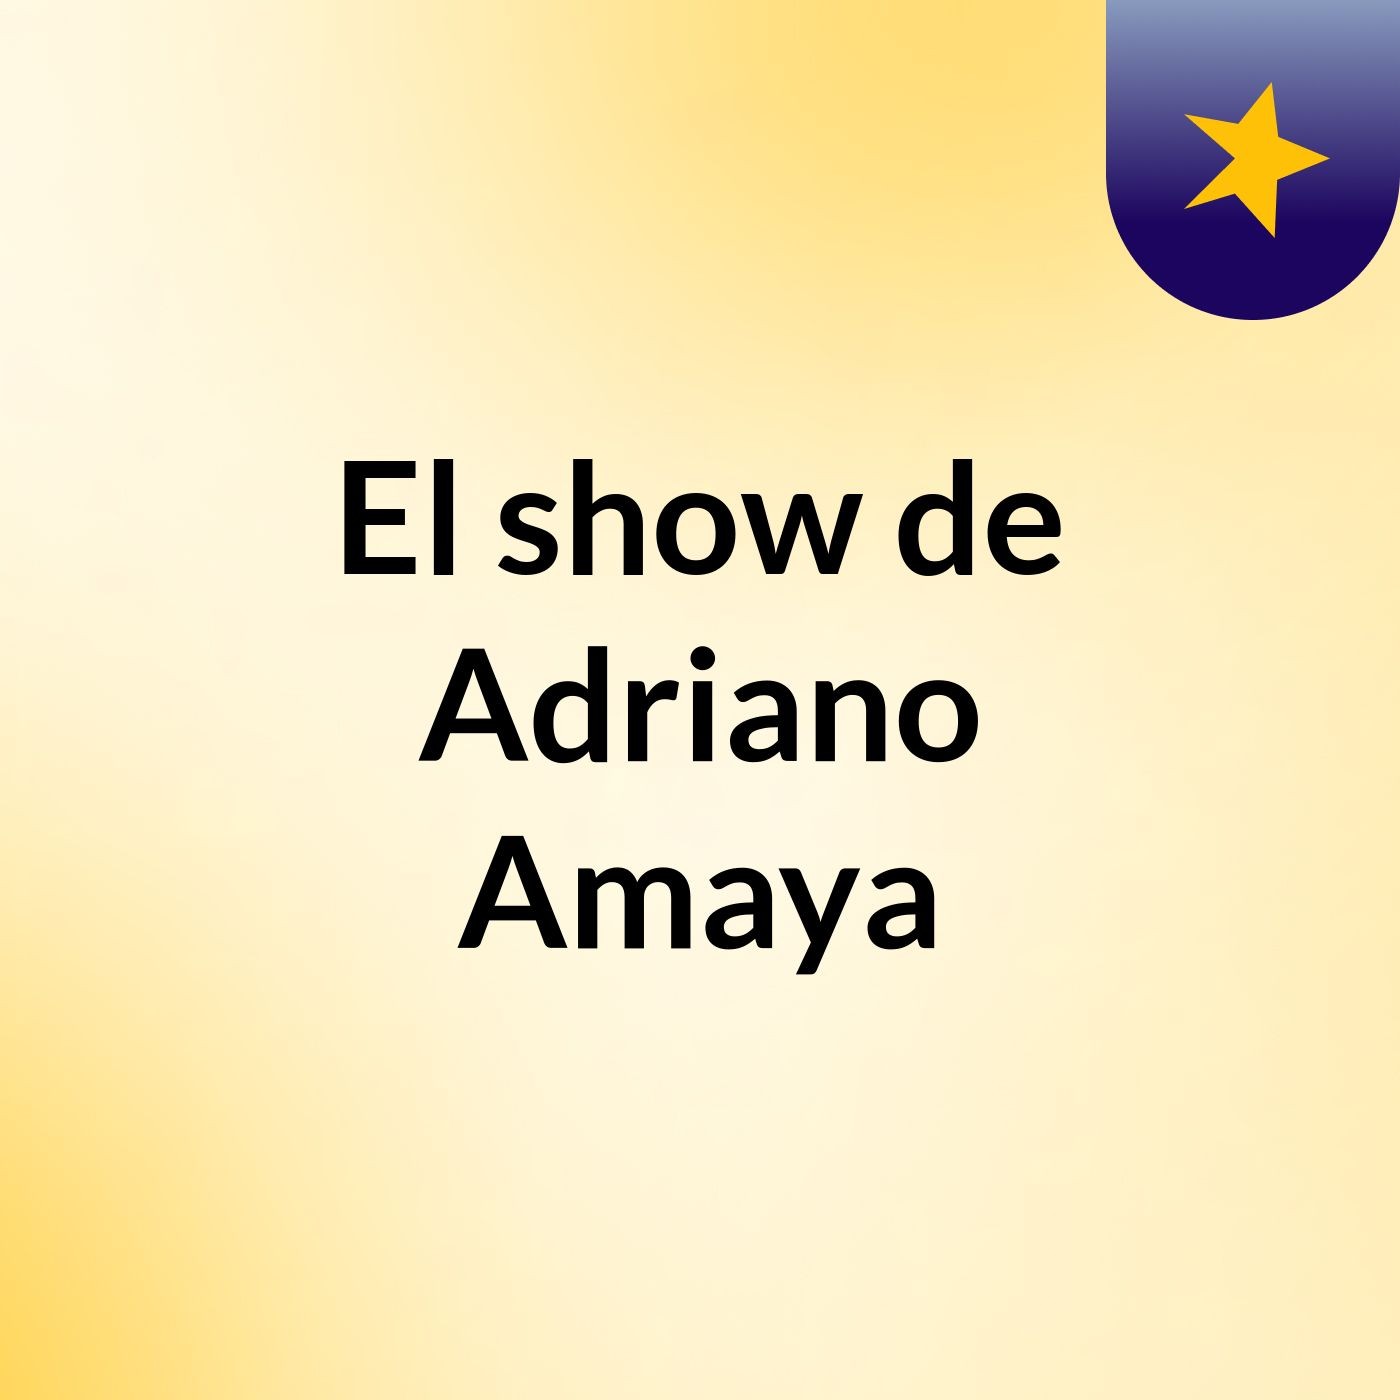 Episodio 2 - El show de Adriano Amaya